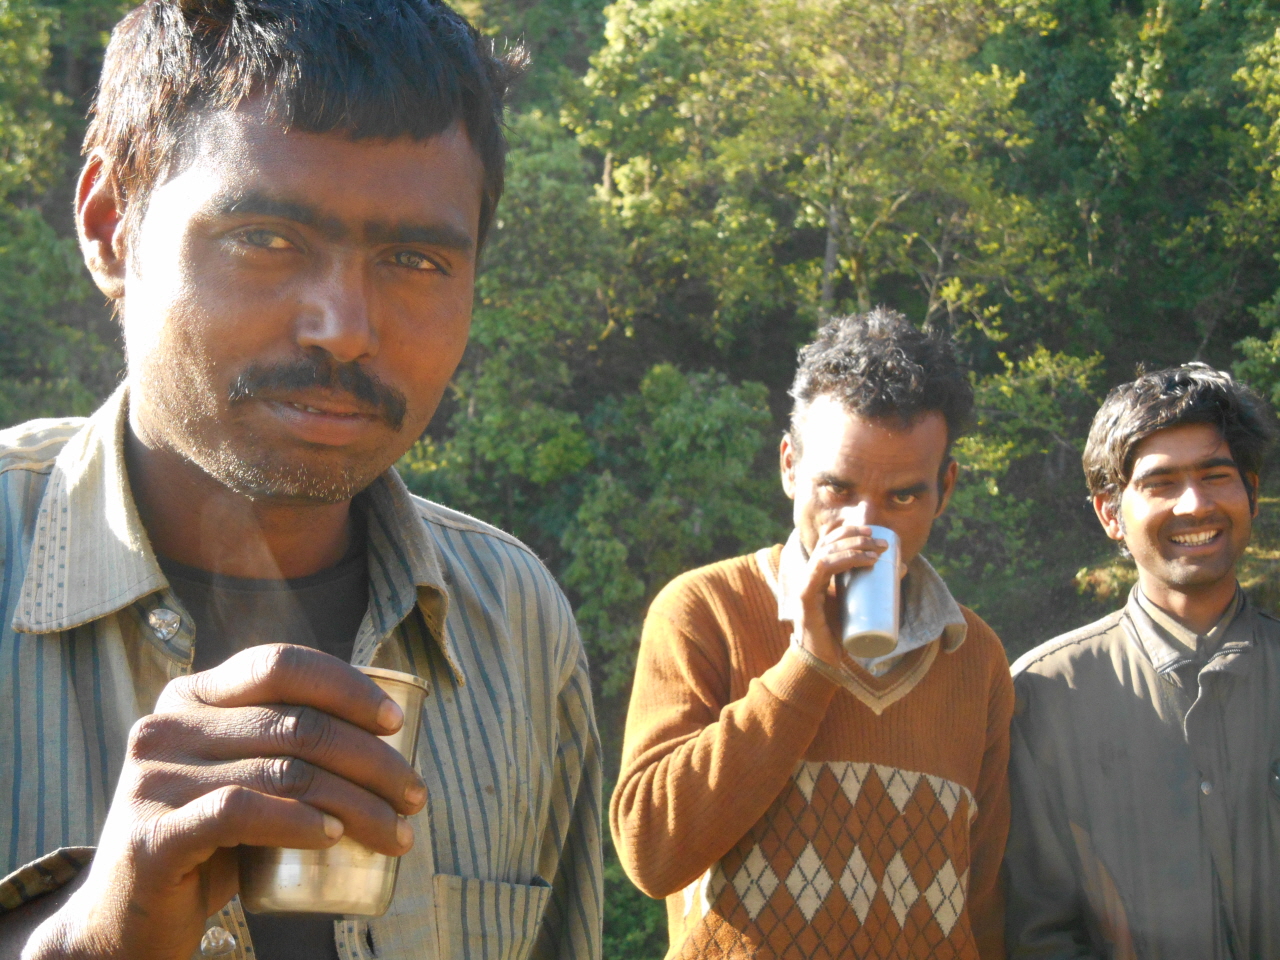 이른 아침 산책길에서 내게 짜이를 권했던 사내들. 네팔에서 온 아스팔트 노동자들이다.